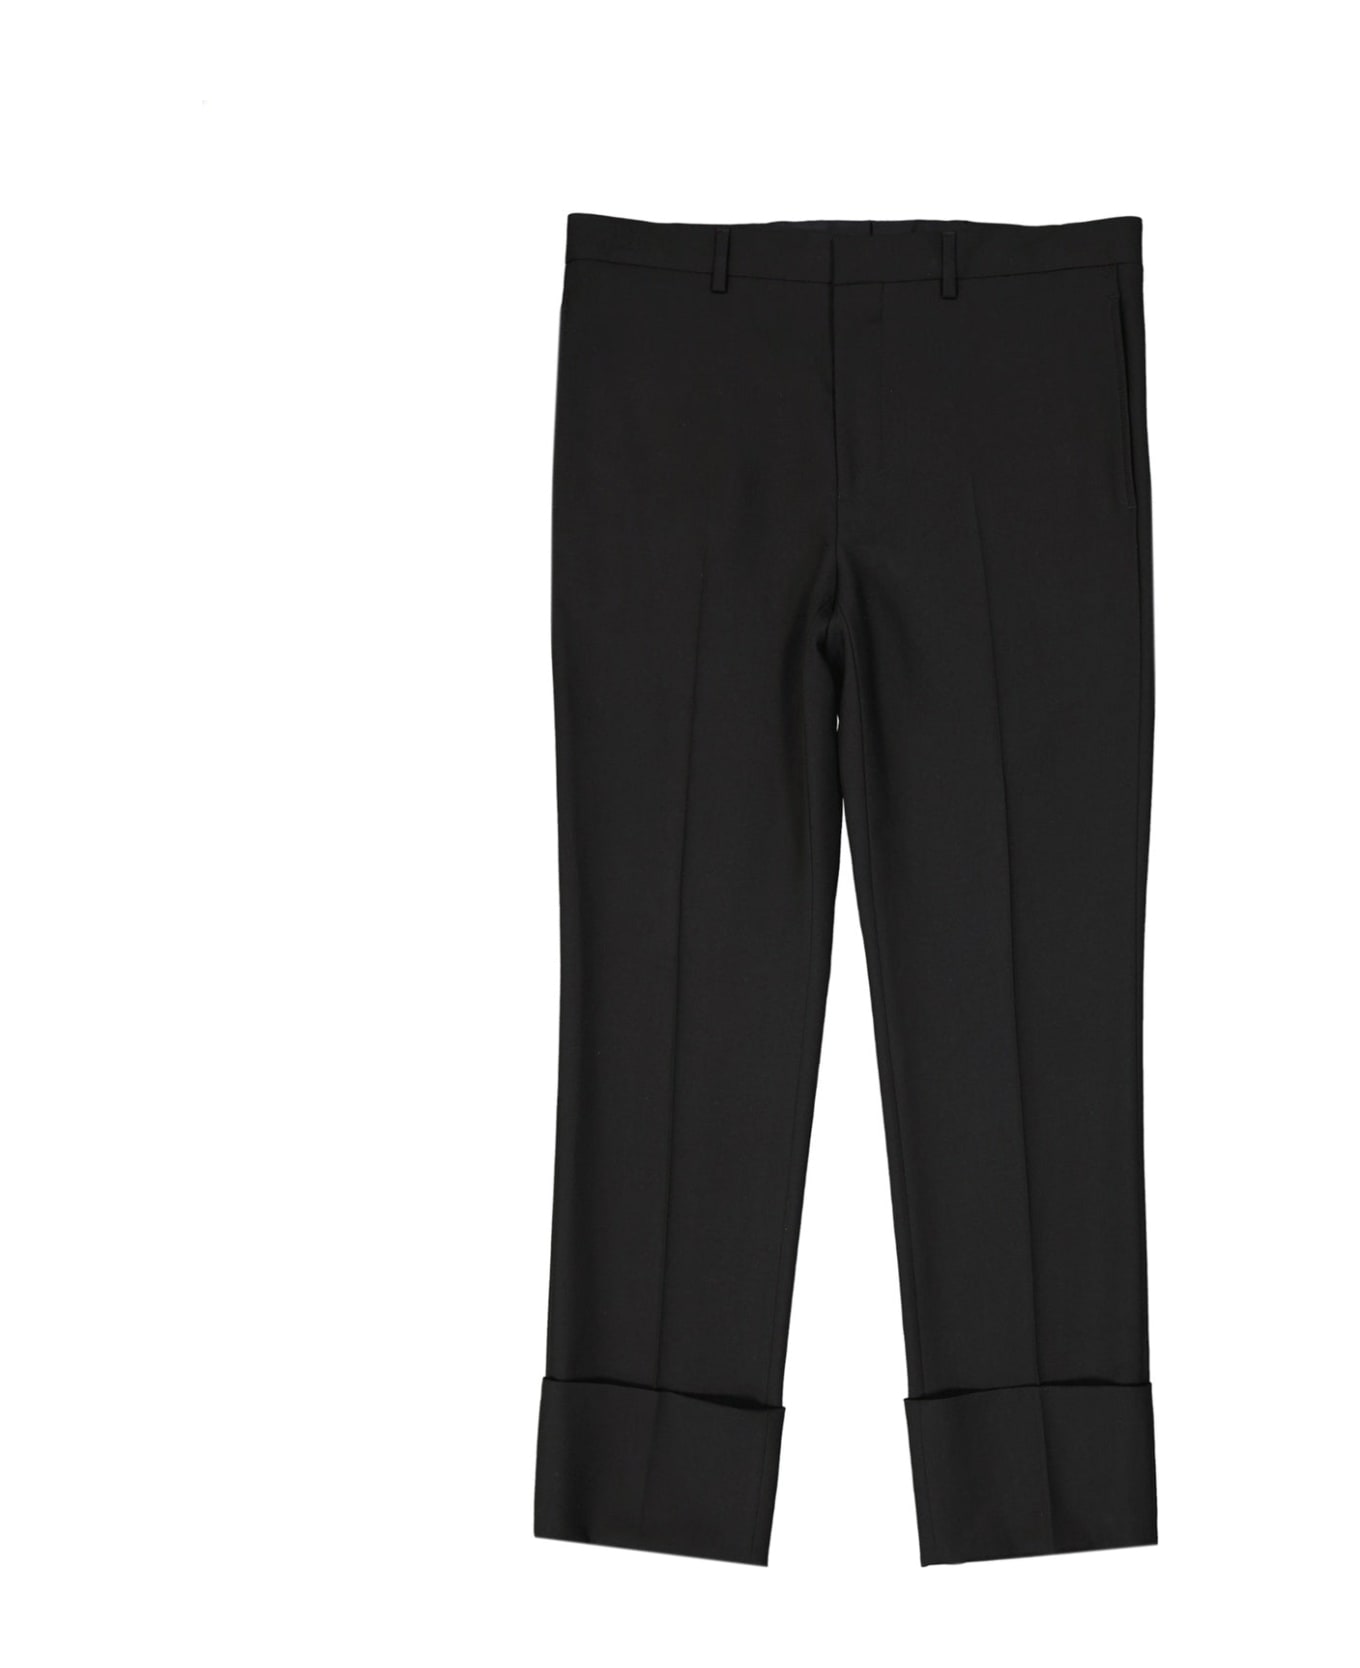 Givenchy Wool Pants - Black ボトムス